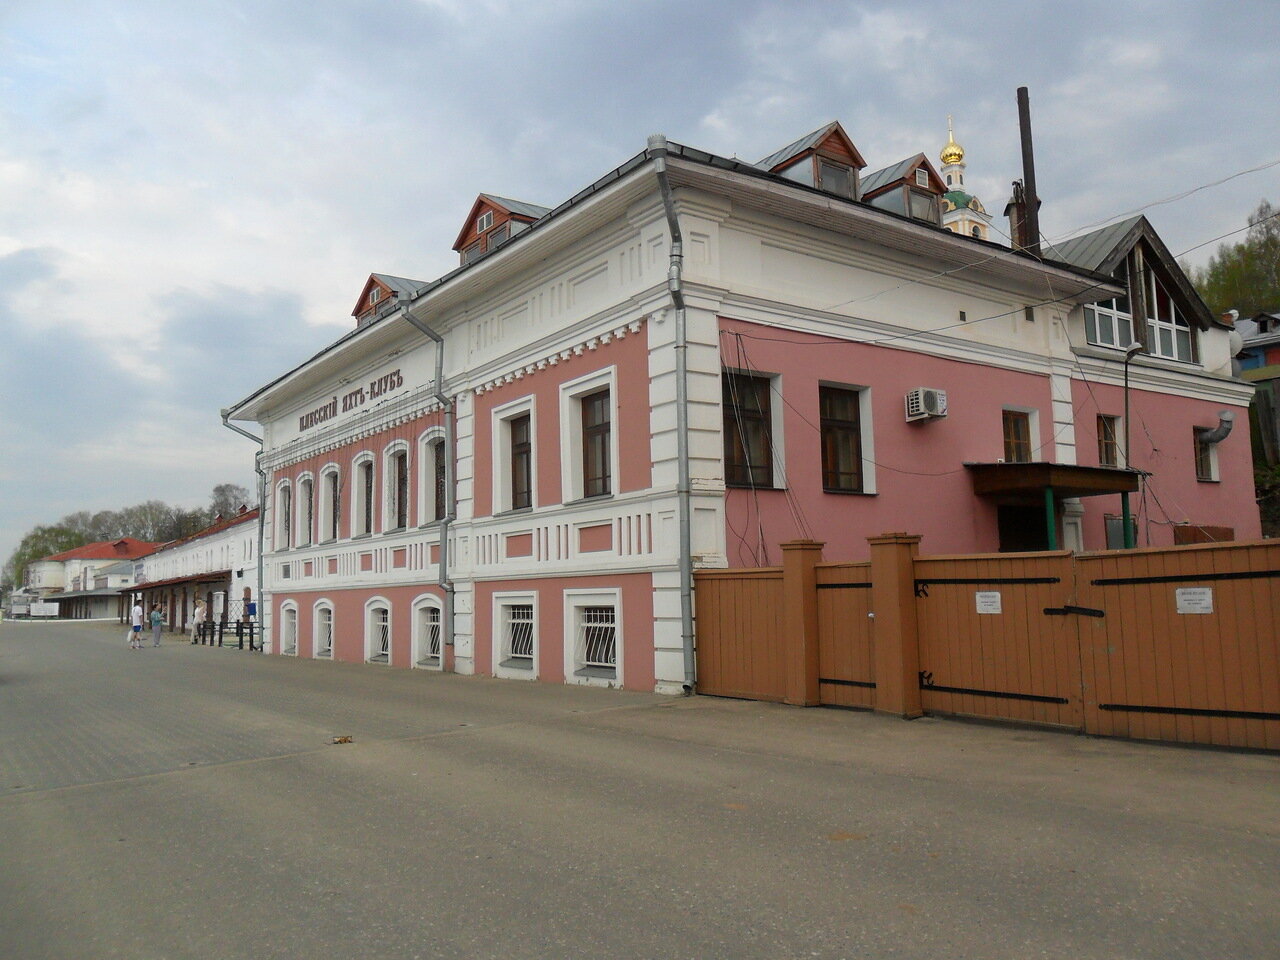 Дом Соболева, построенный в середине XIX столетия